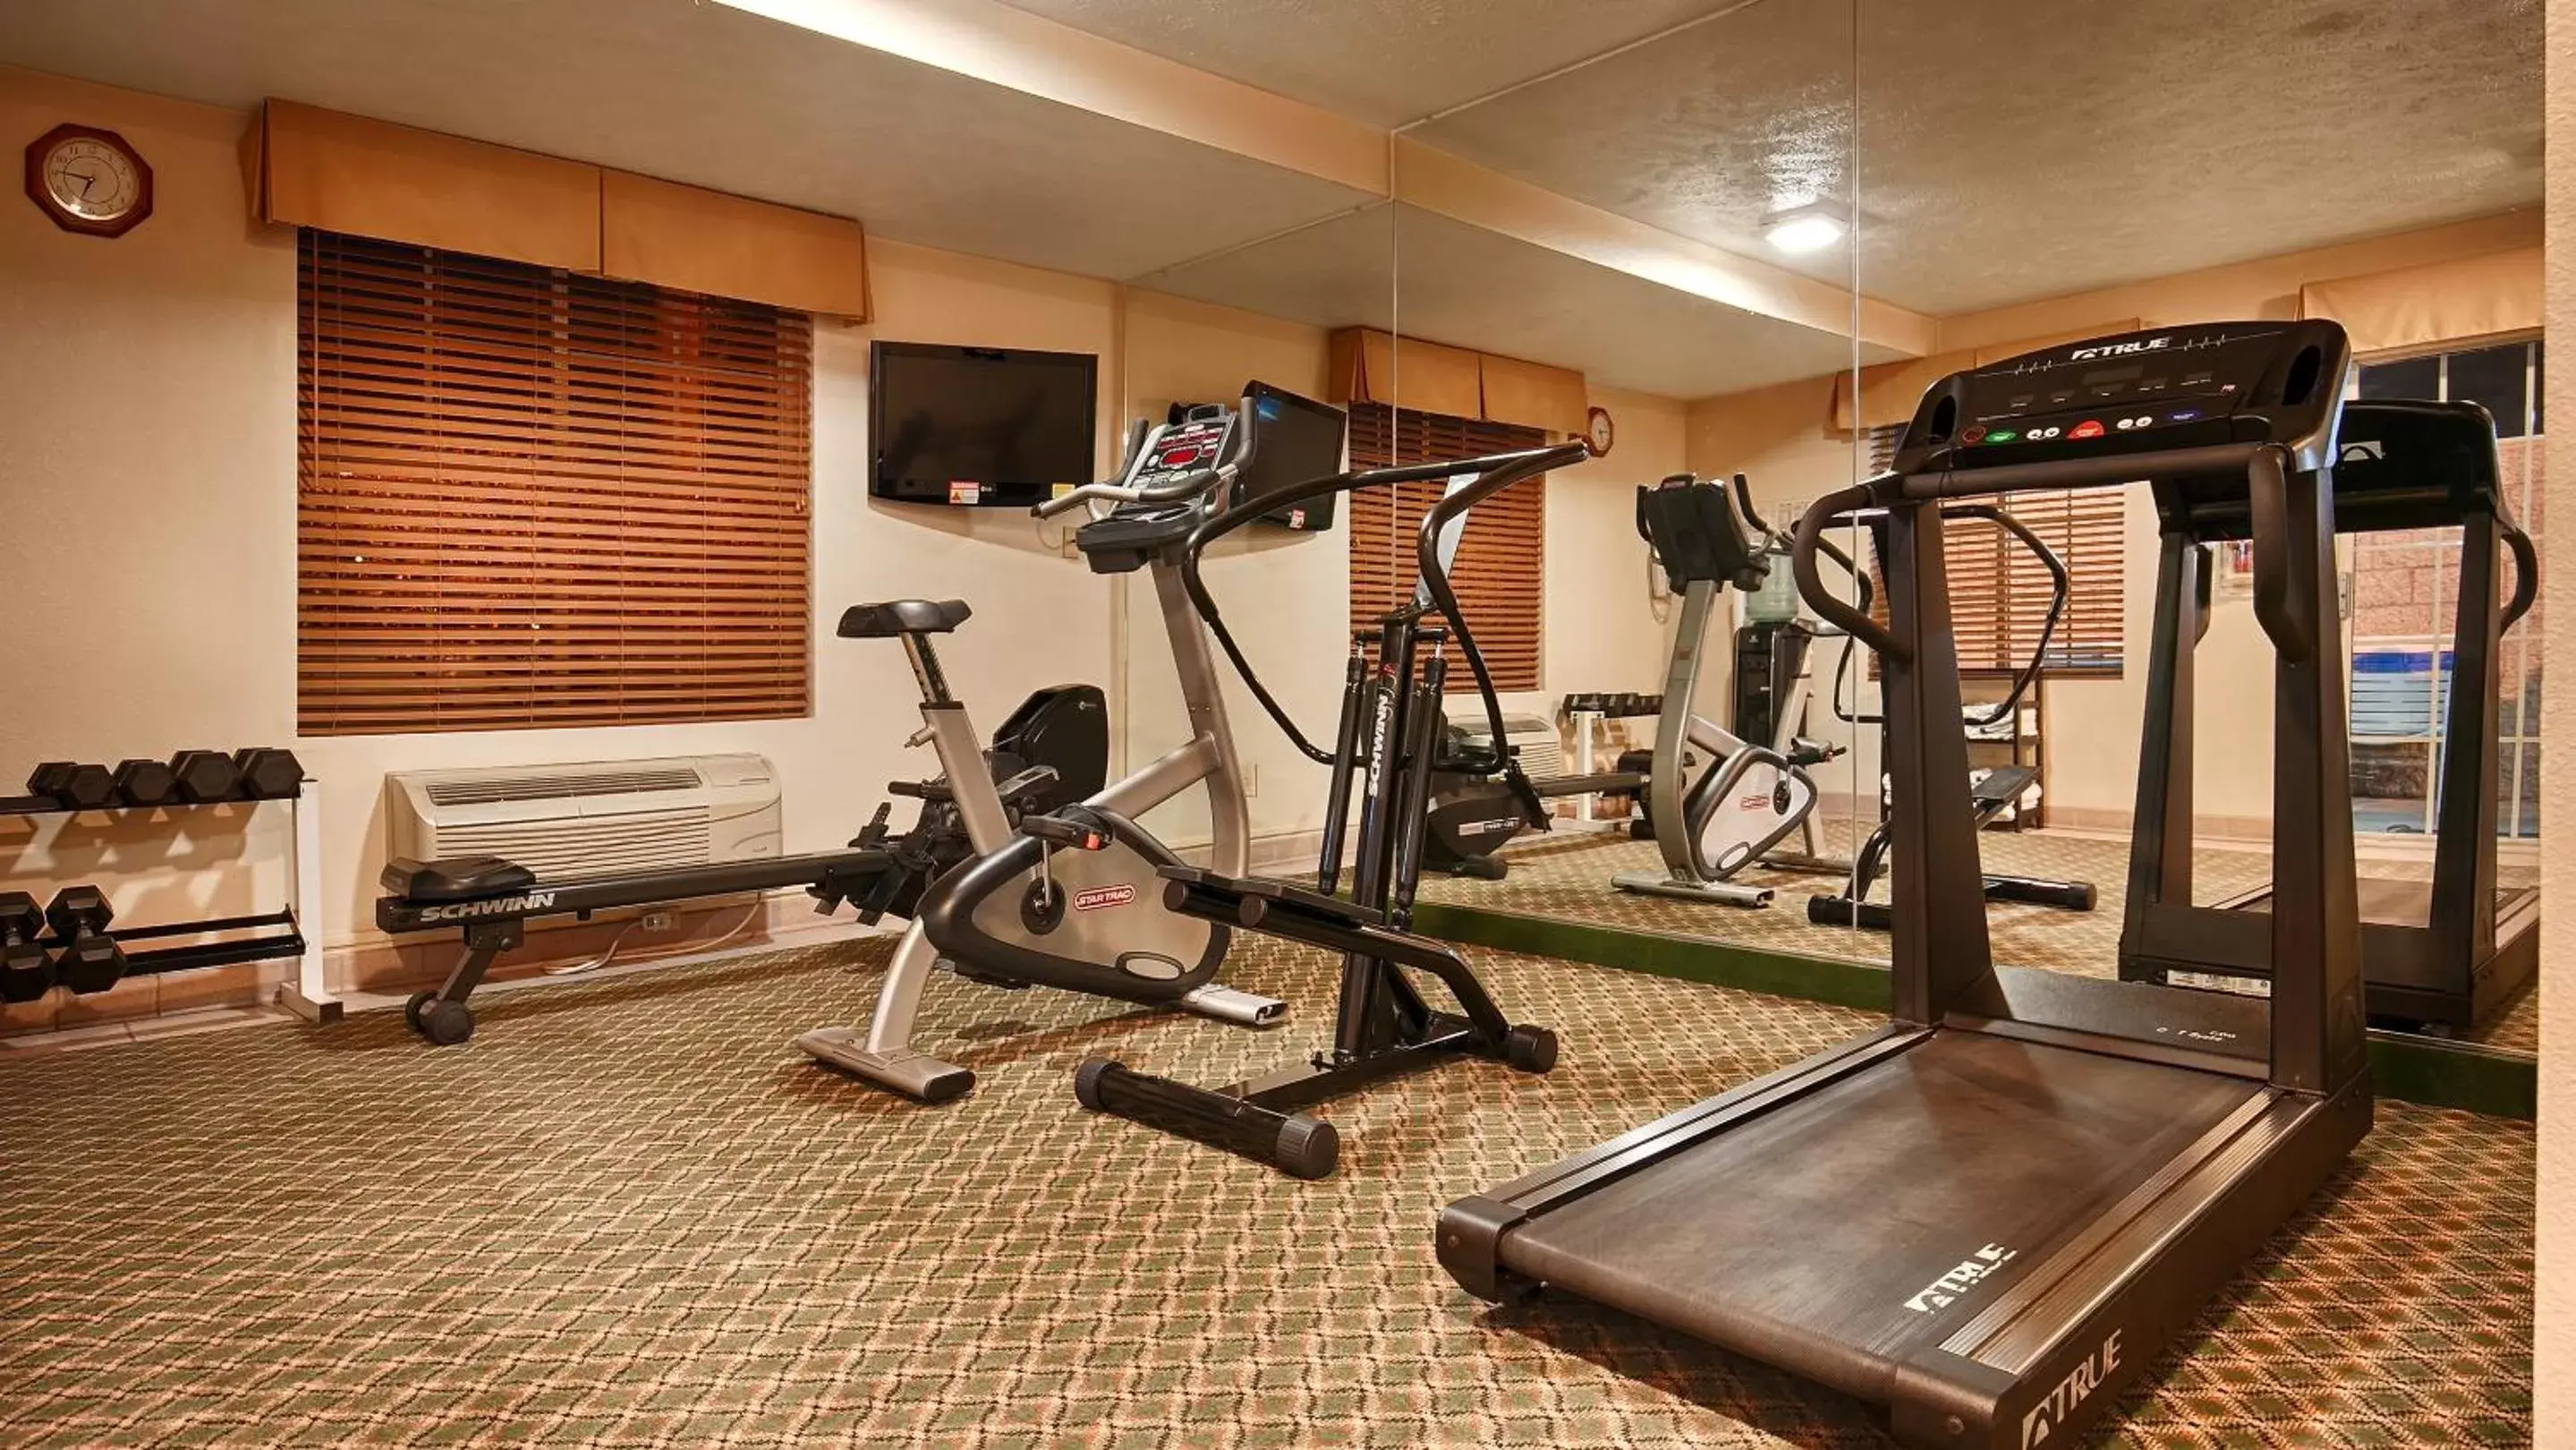 Fitness centre/facilities, Fitness Center/Facilities in Best Western John Jay Inn